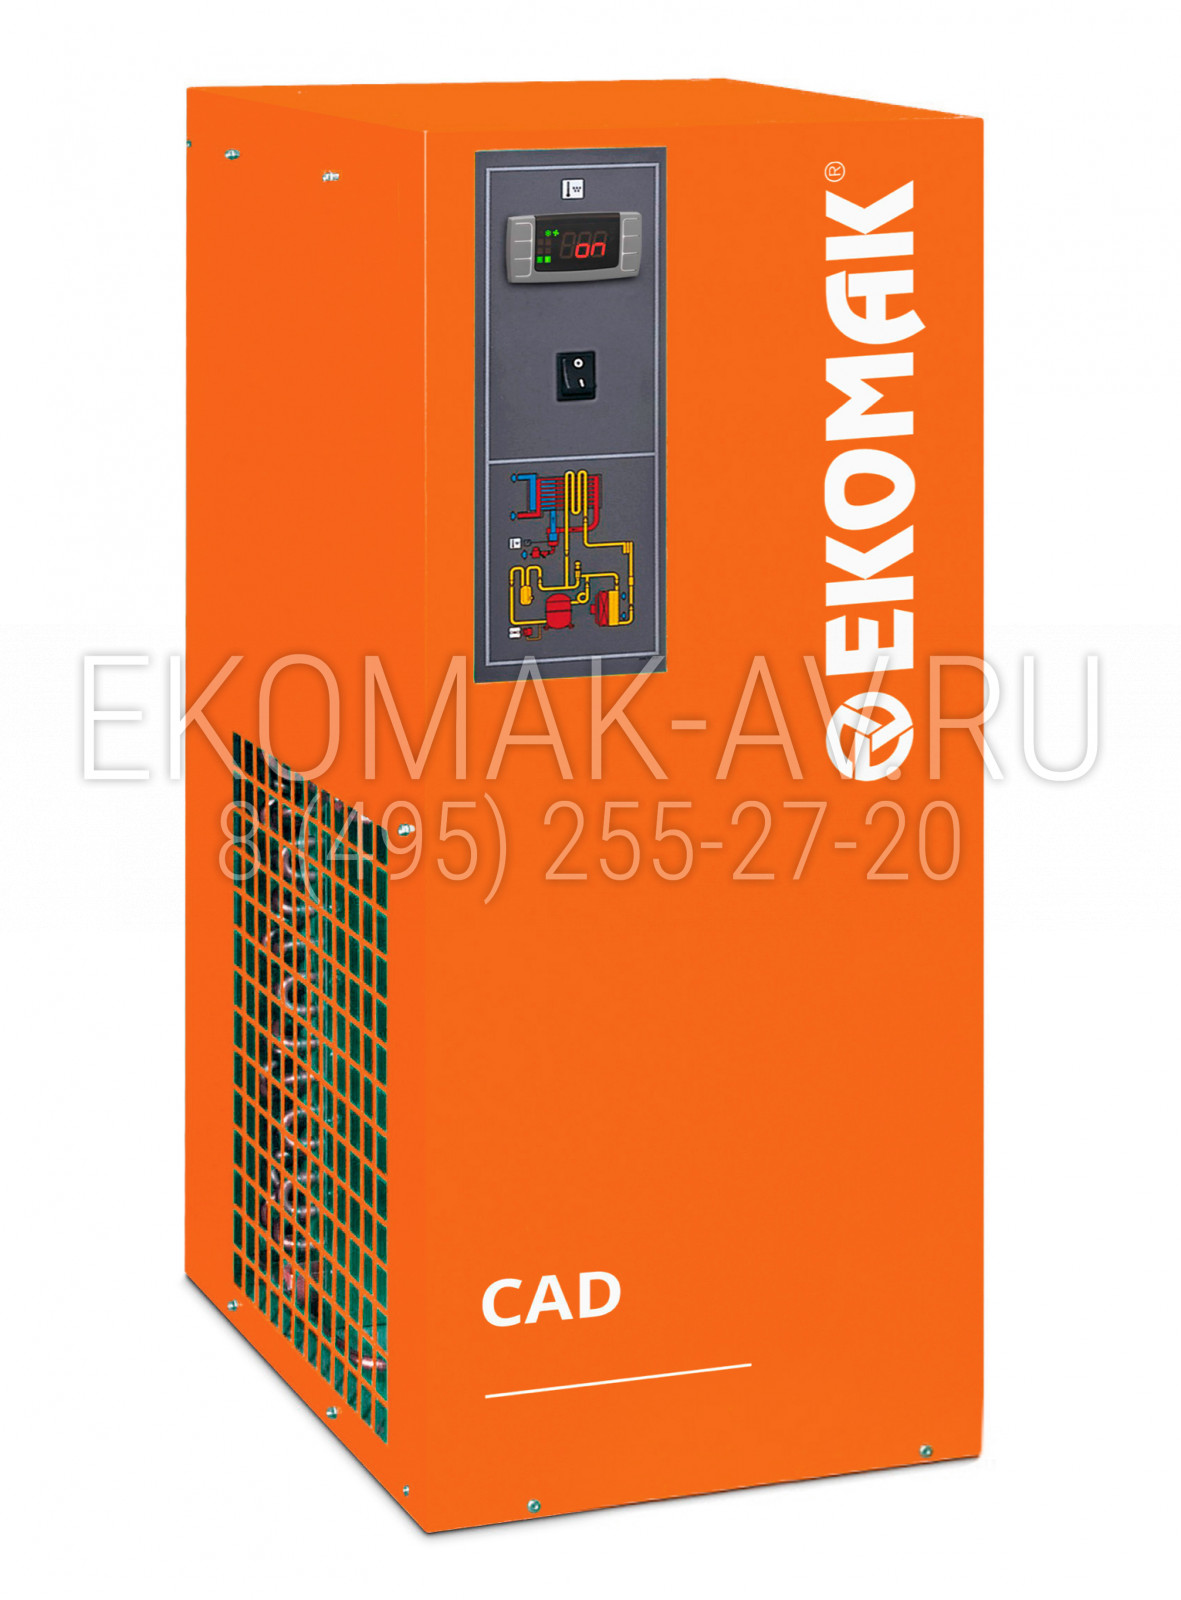 Рефрижераторный осушитель Ekomak CAD 42